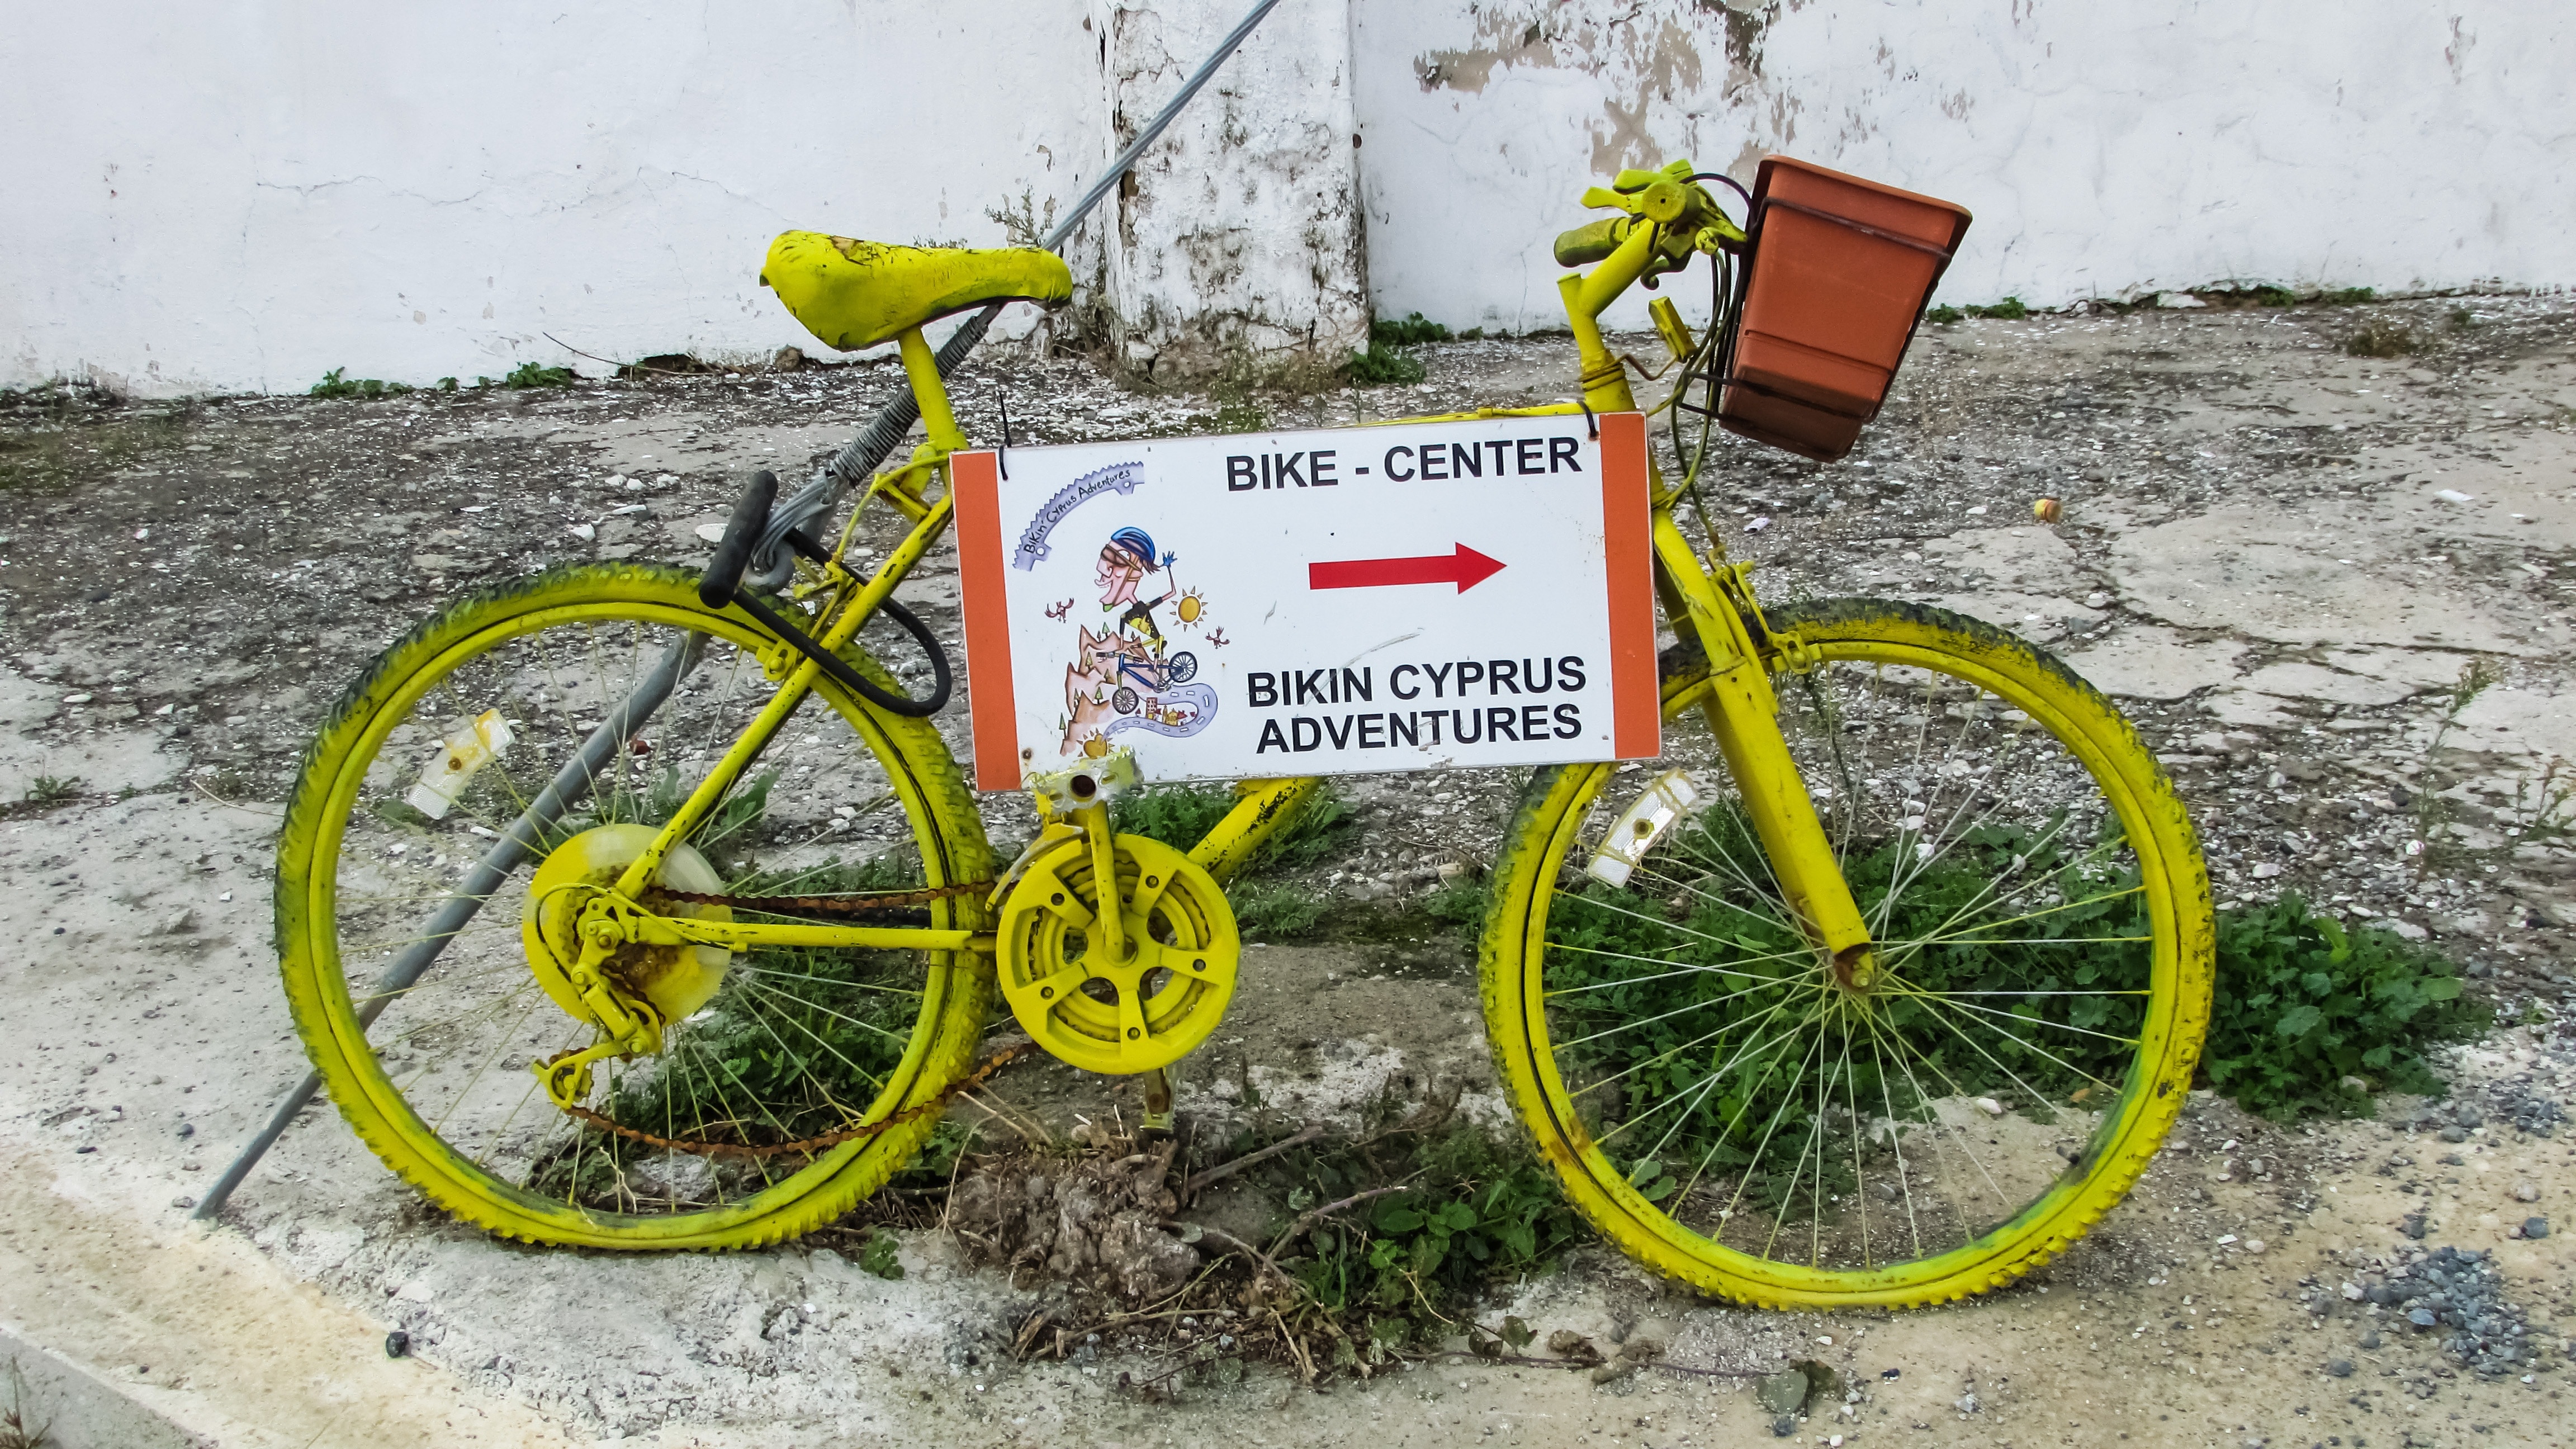 bike center bikin cyprus adventures signage